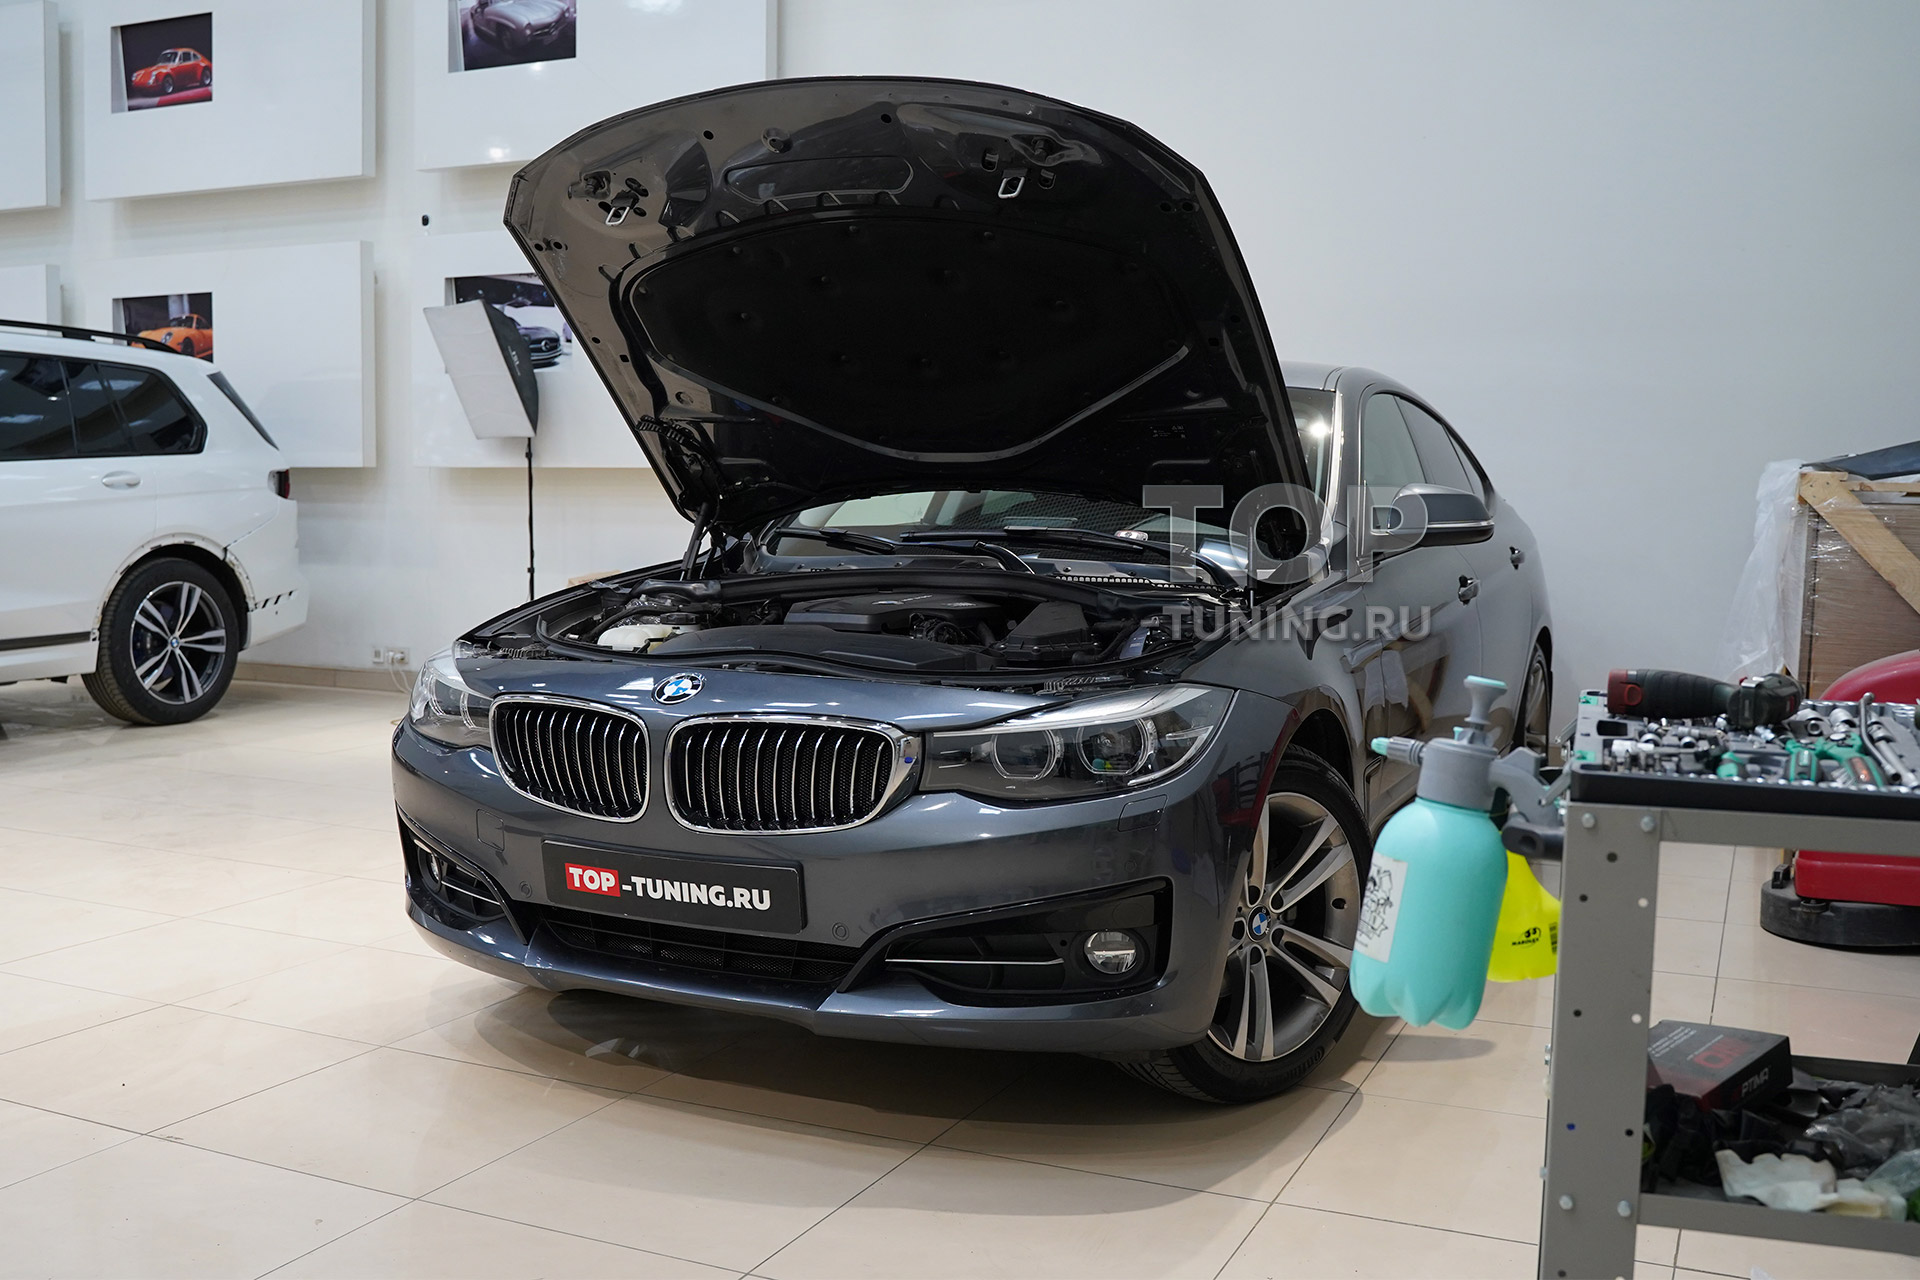 Сетка в ноздри и воздухозаборники бампера BMW 3 F30 - Обзор готовой работы 